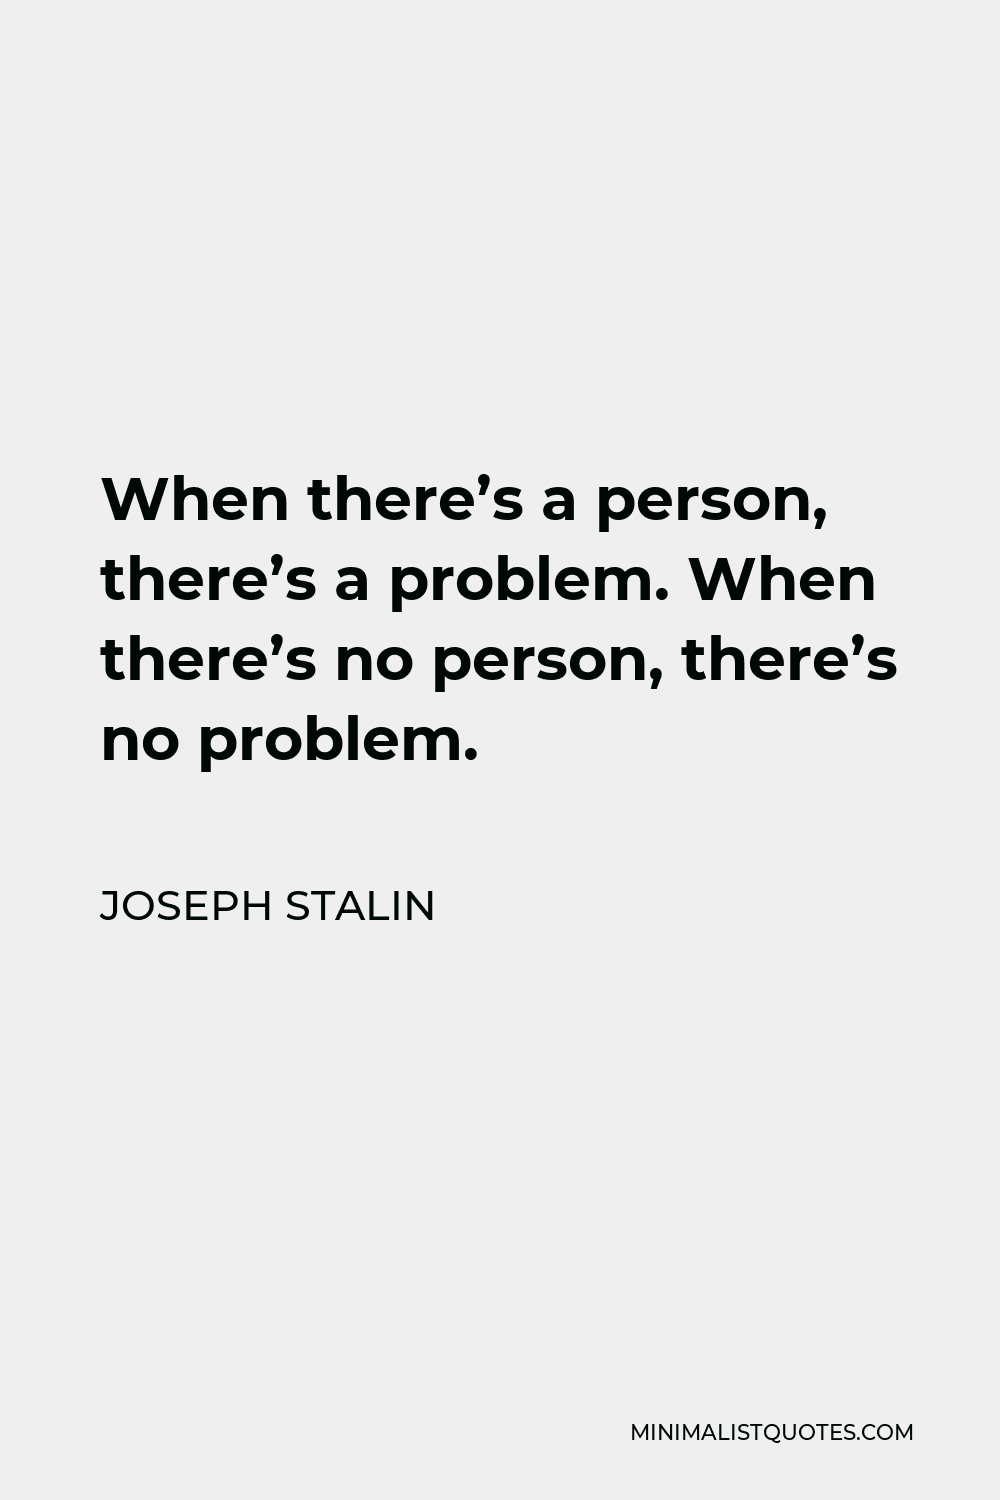 Joseph Stalin Quote - When there’s a person, there’s a problem. When there’s no person, there’s no problem.